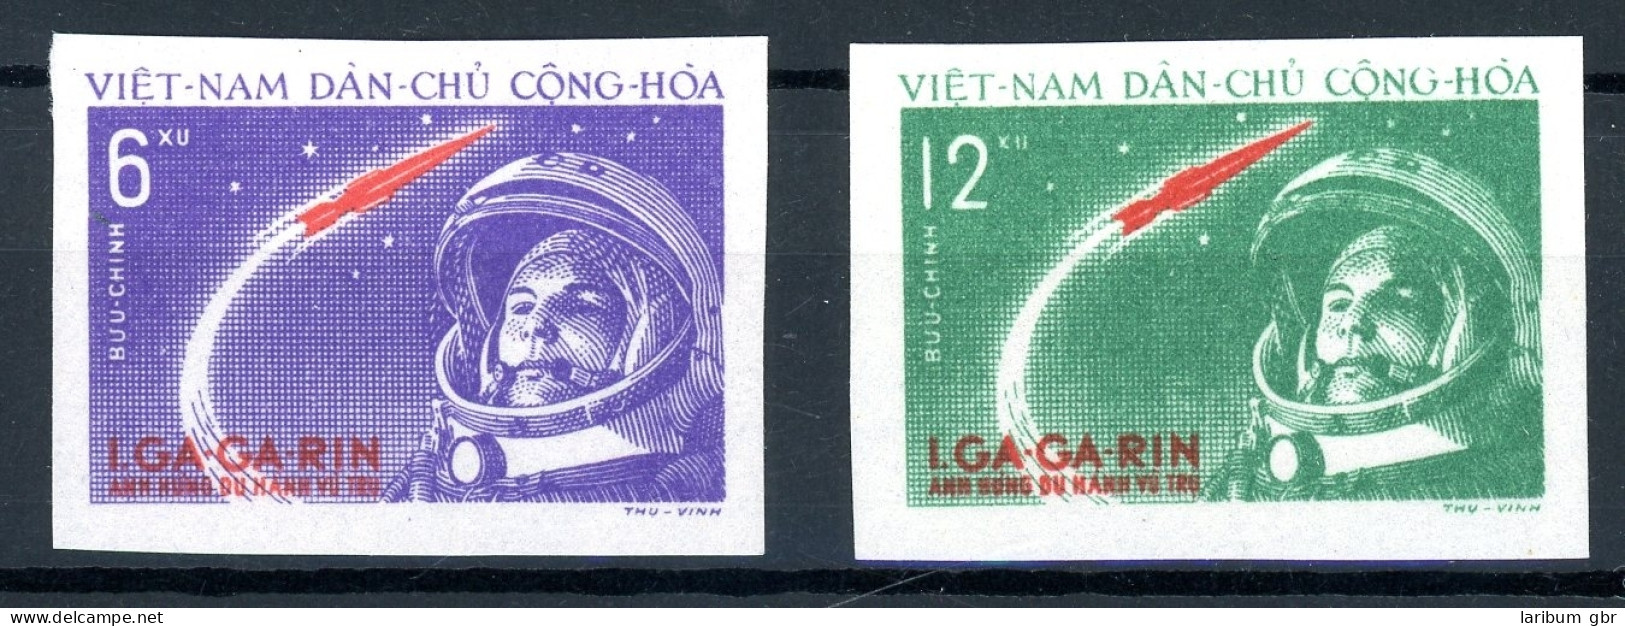 Vietnam 166-167 U Postfrisch Bemannte Raumfahrt #IS562 - Vietnam